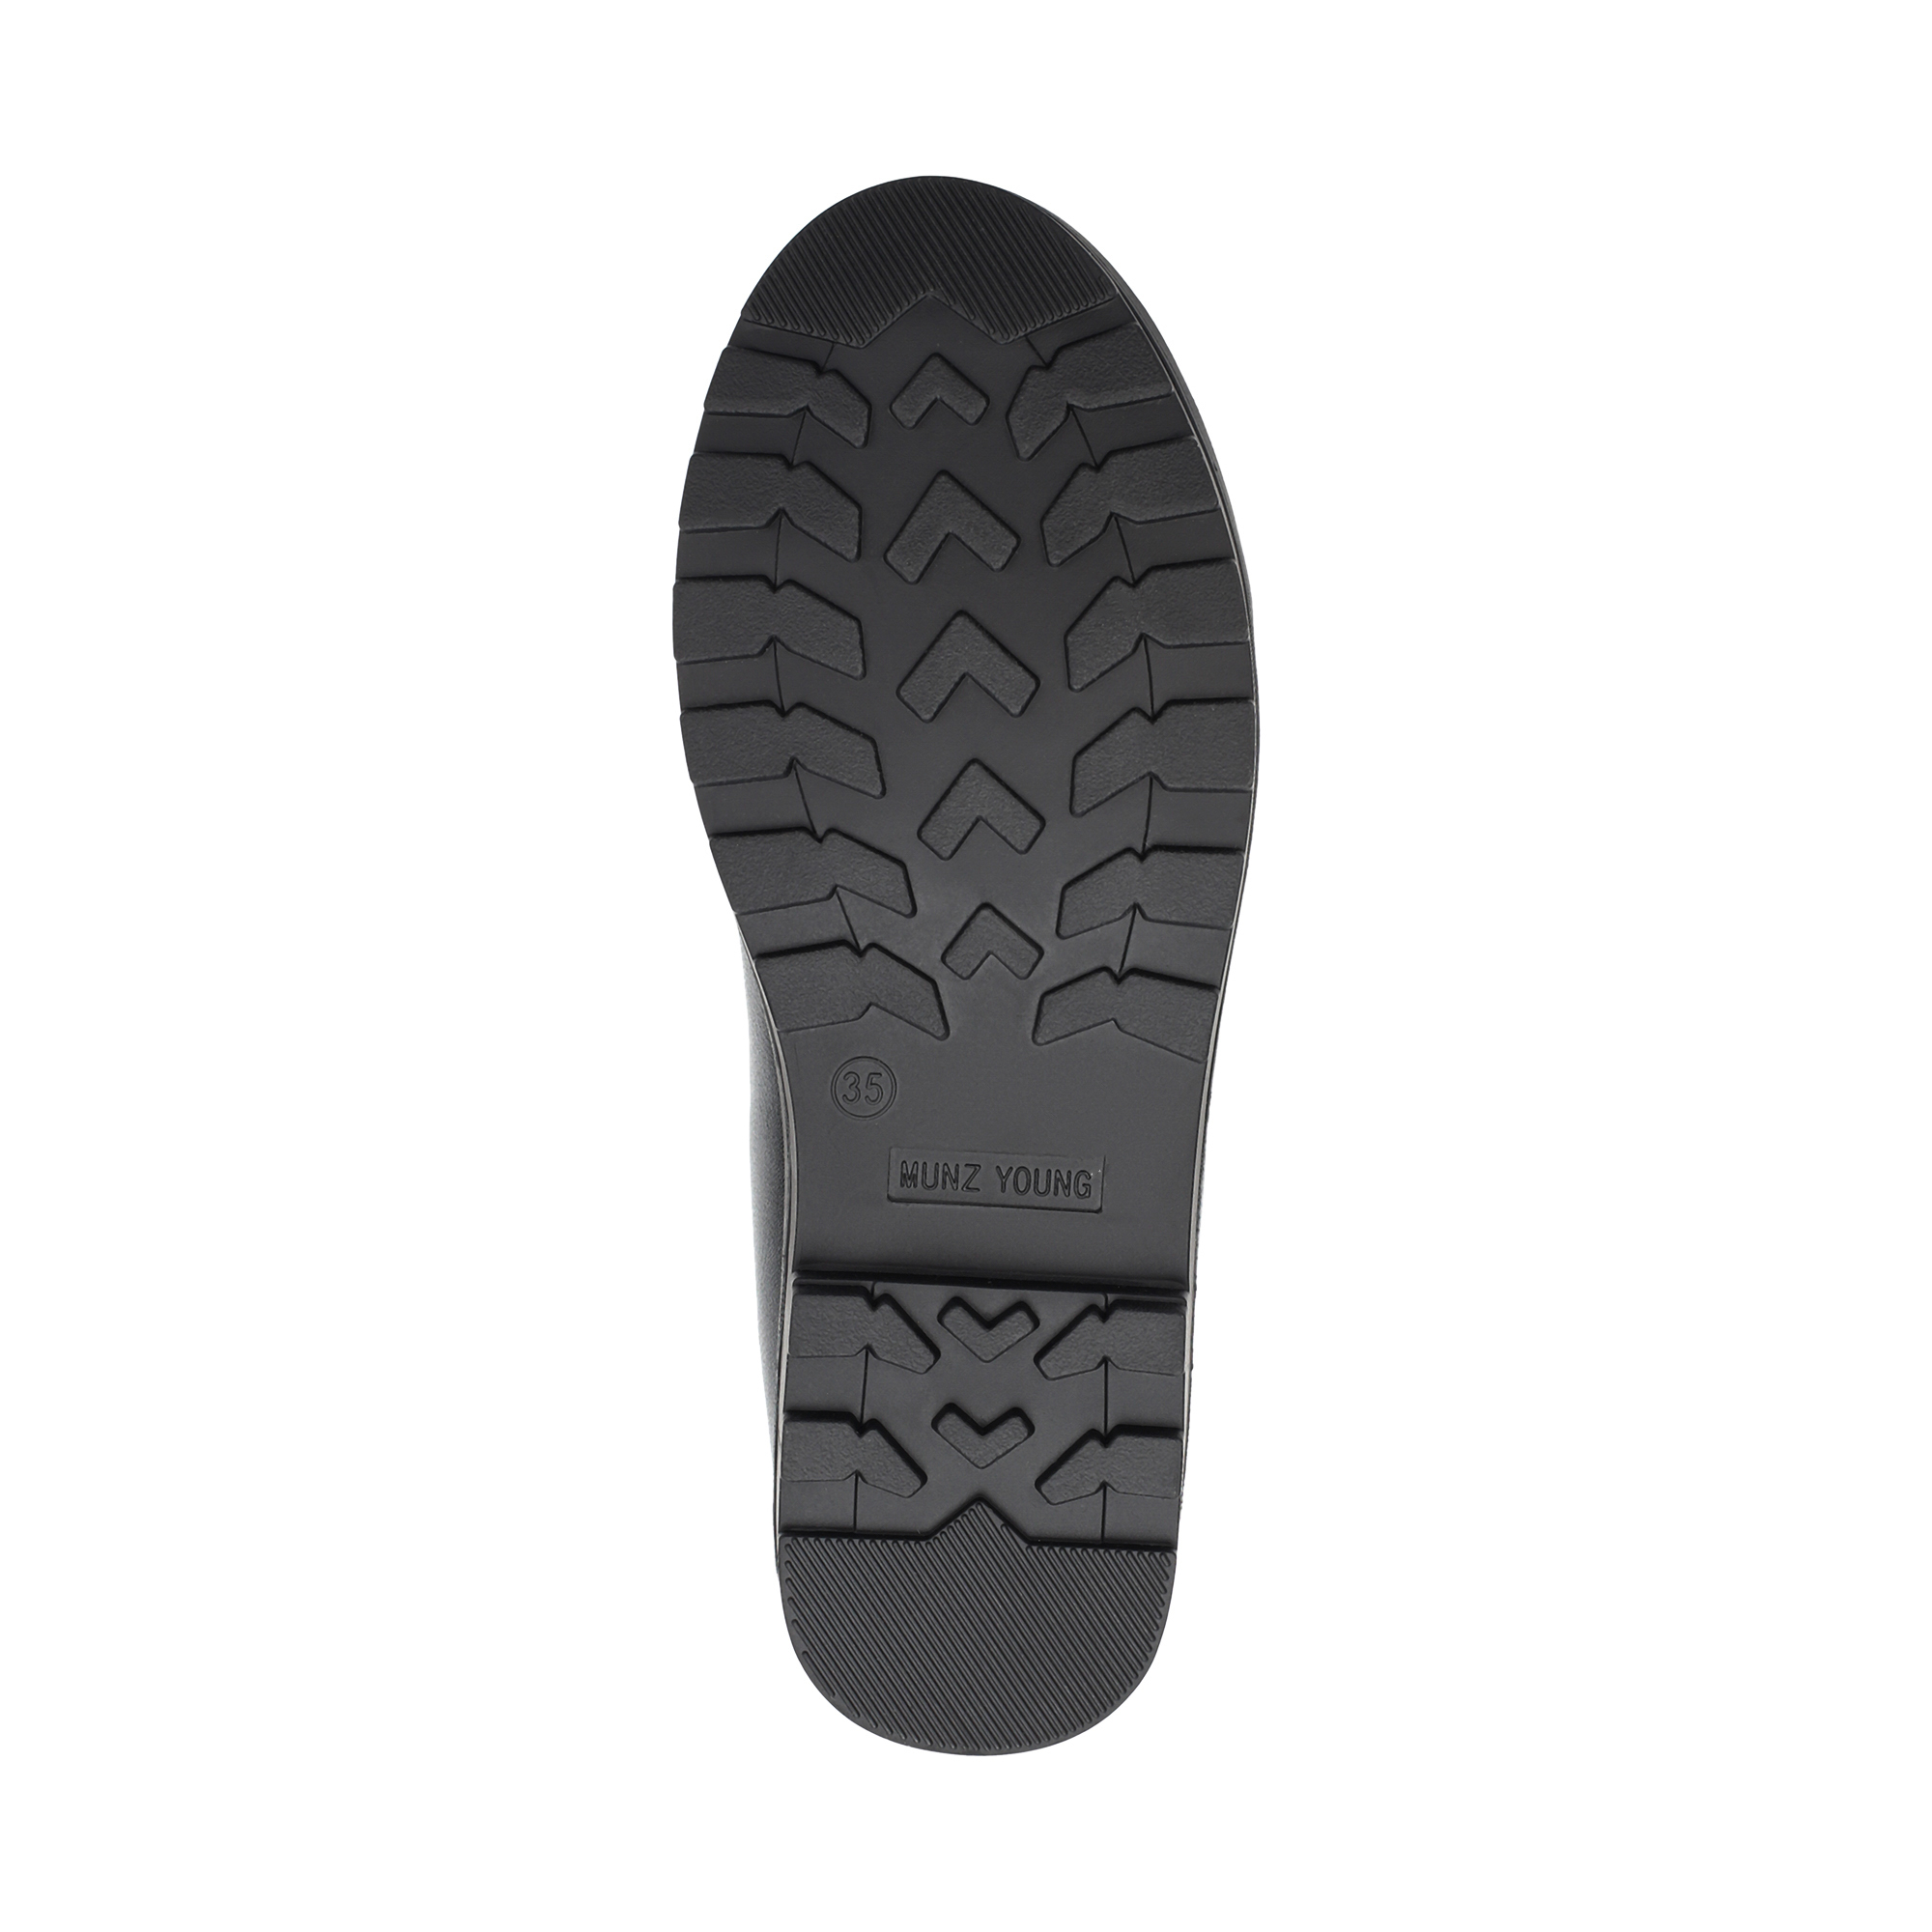 Обувь для девочек MUNZ YOUNG 215-127A-1602, цвет черный, размер 35 - фото 4